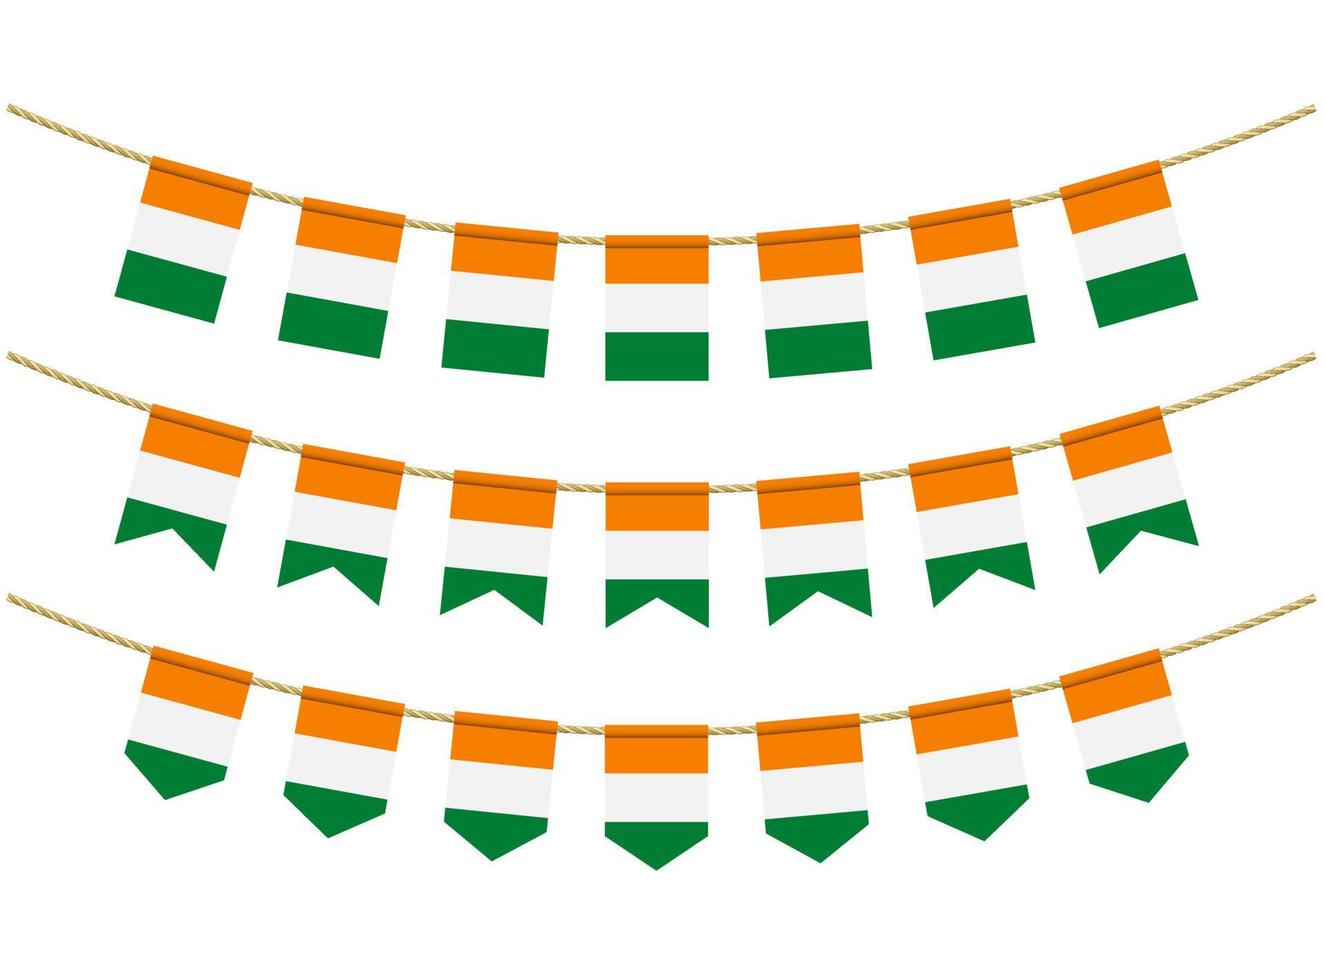 Côte d'Ivoire - Côte d'Ivoire Flagge auf den Seilen auf weißem Hintergrund. Satz patriotischer Ammerflaggen. Flaggendekoration der Elfenbeinküste - Flagge der Elfenbeinküste vektor